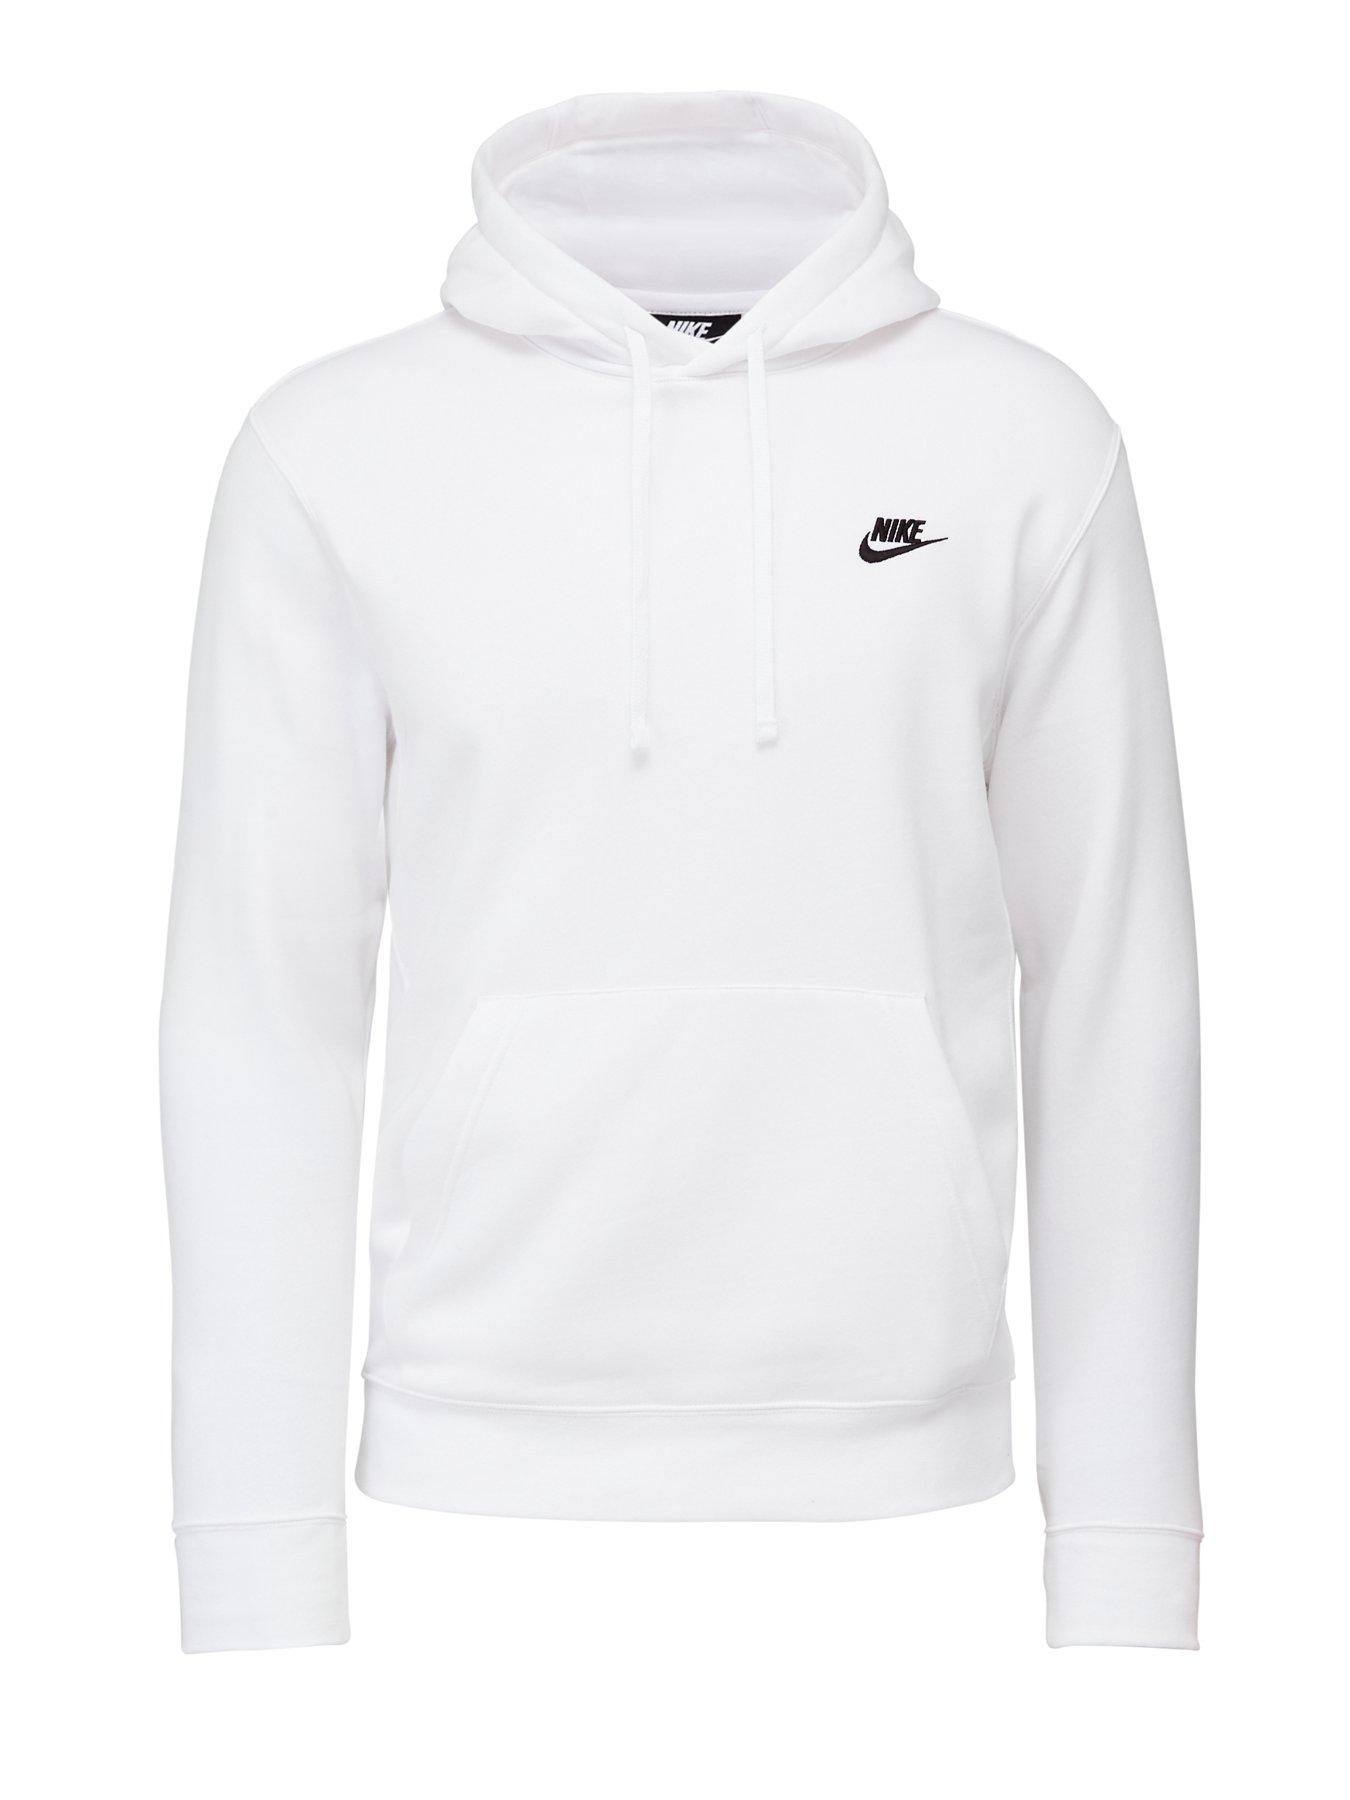 Nike Sportswear Club Fleece Overhead Hoodie - White/Black